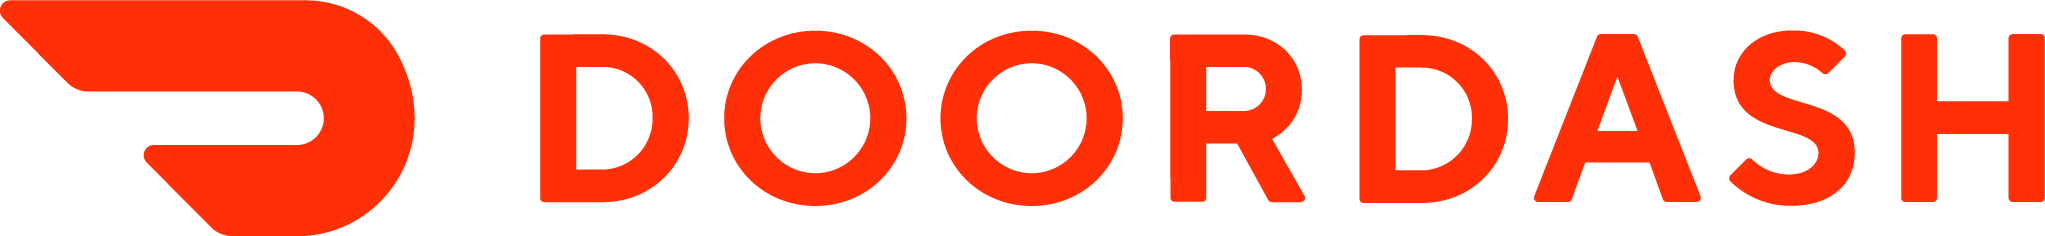 DoorDash_logo